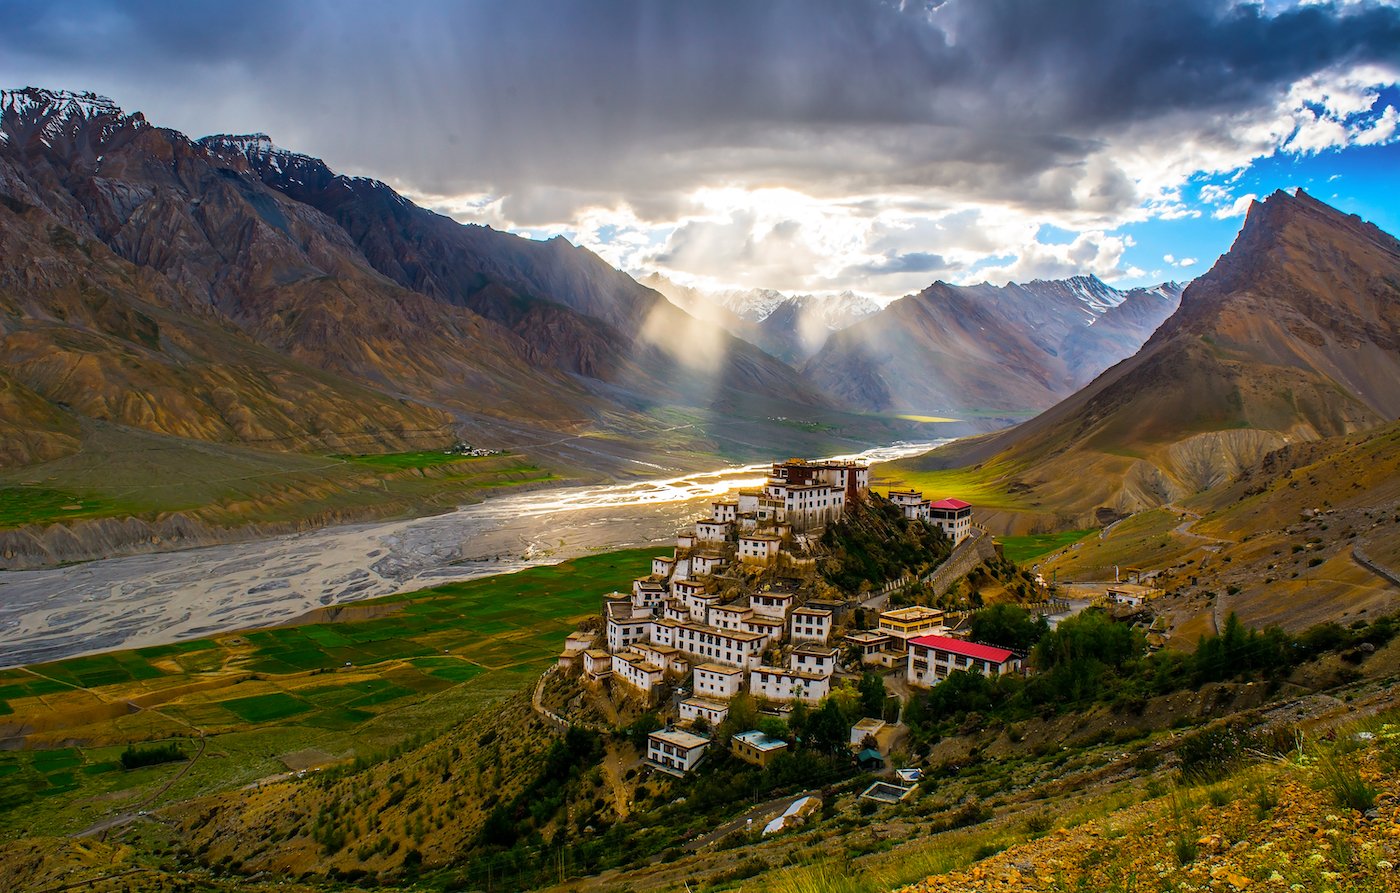 8 Breathtaking Mountain Monasteries Around the World